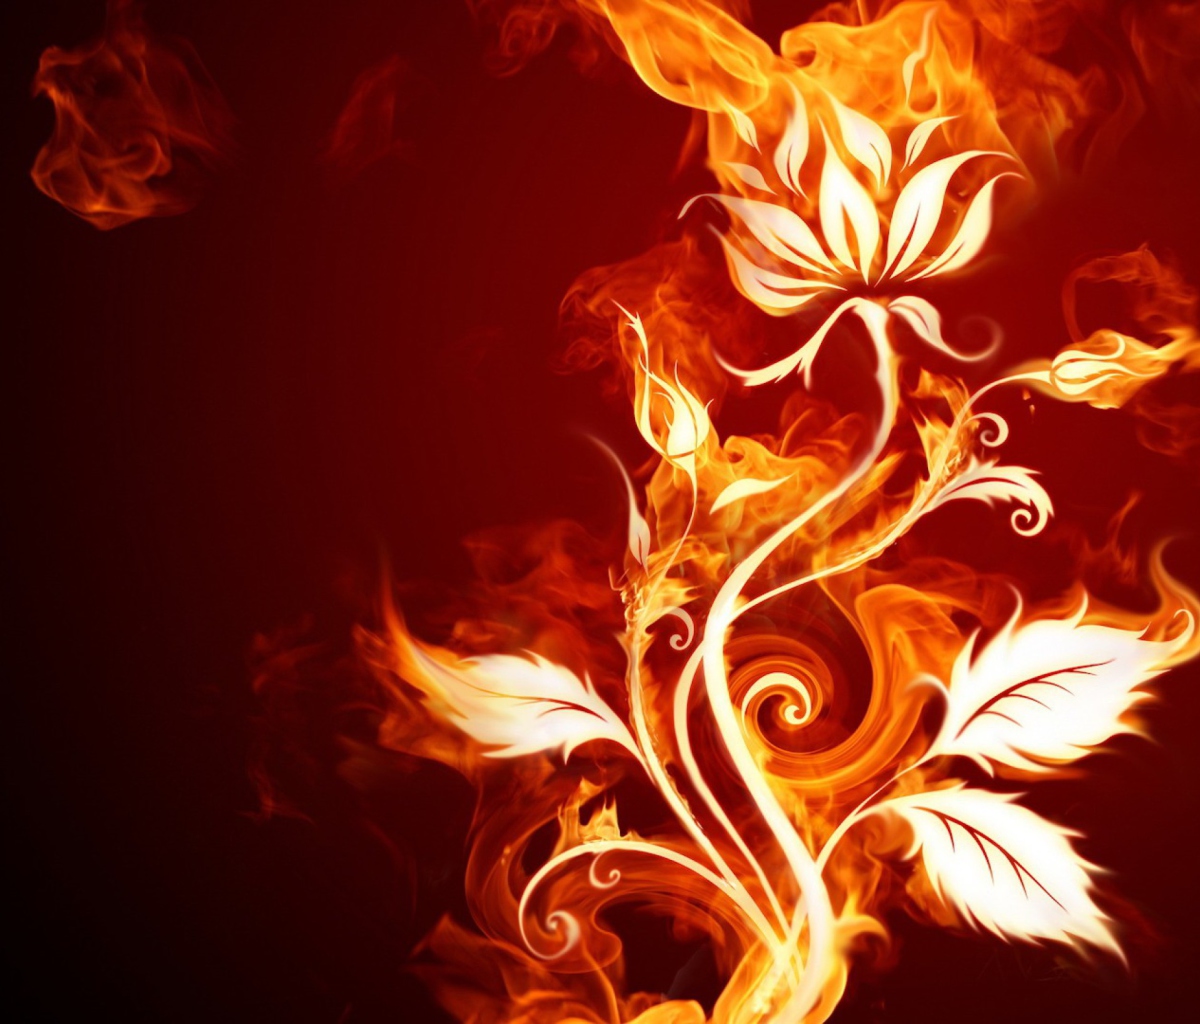 Das Fire Flower Wallpaper 1200x1024